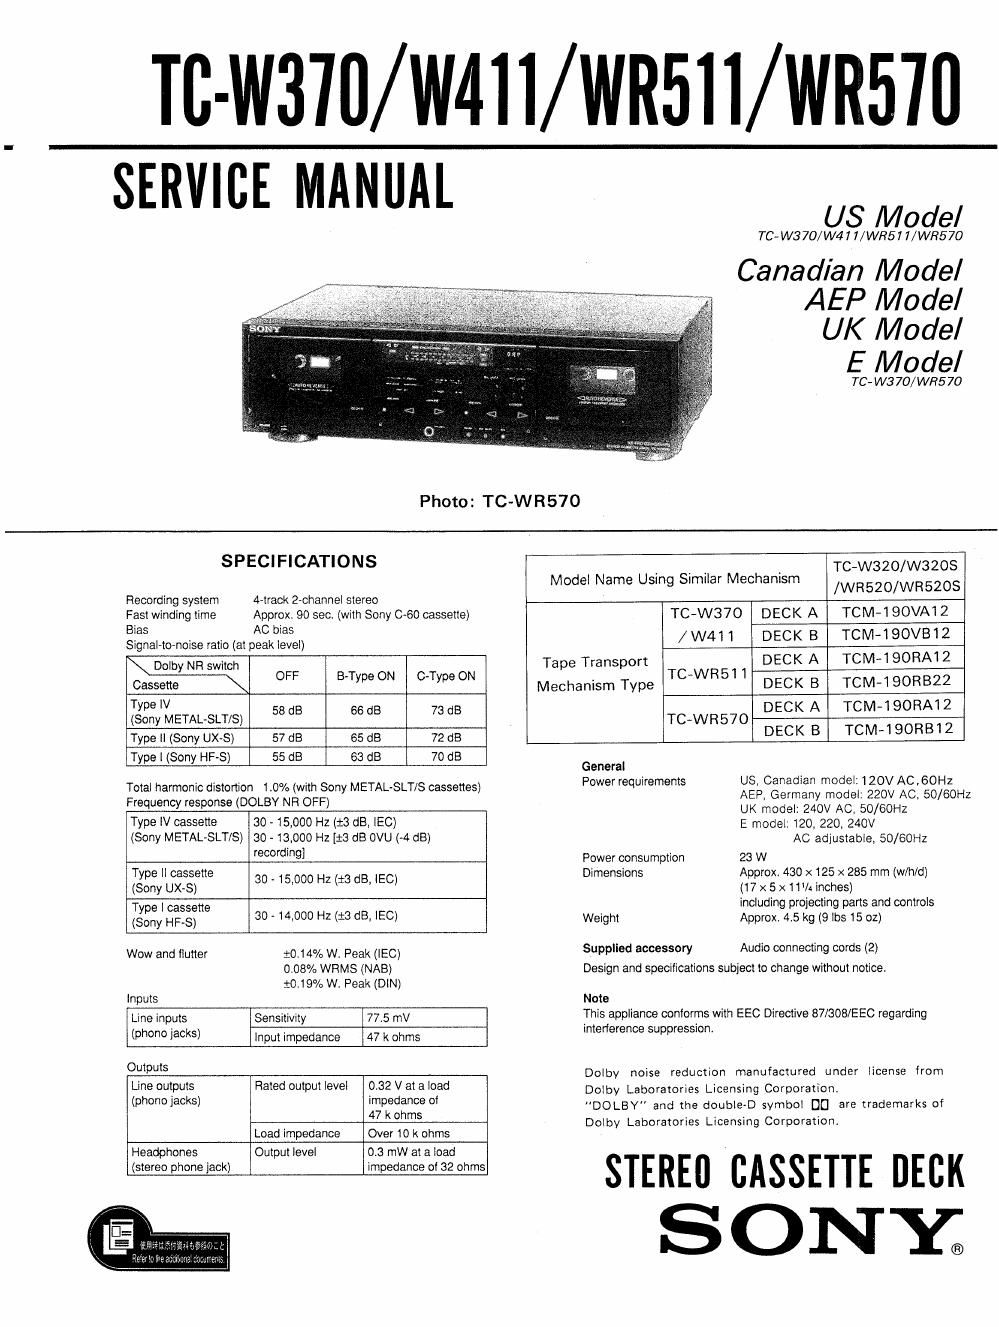 sony tc w 411 service manual